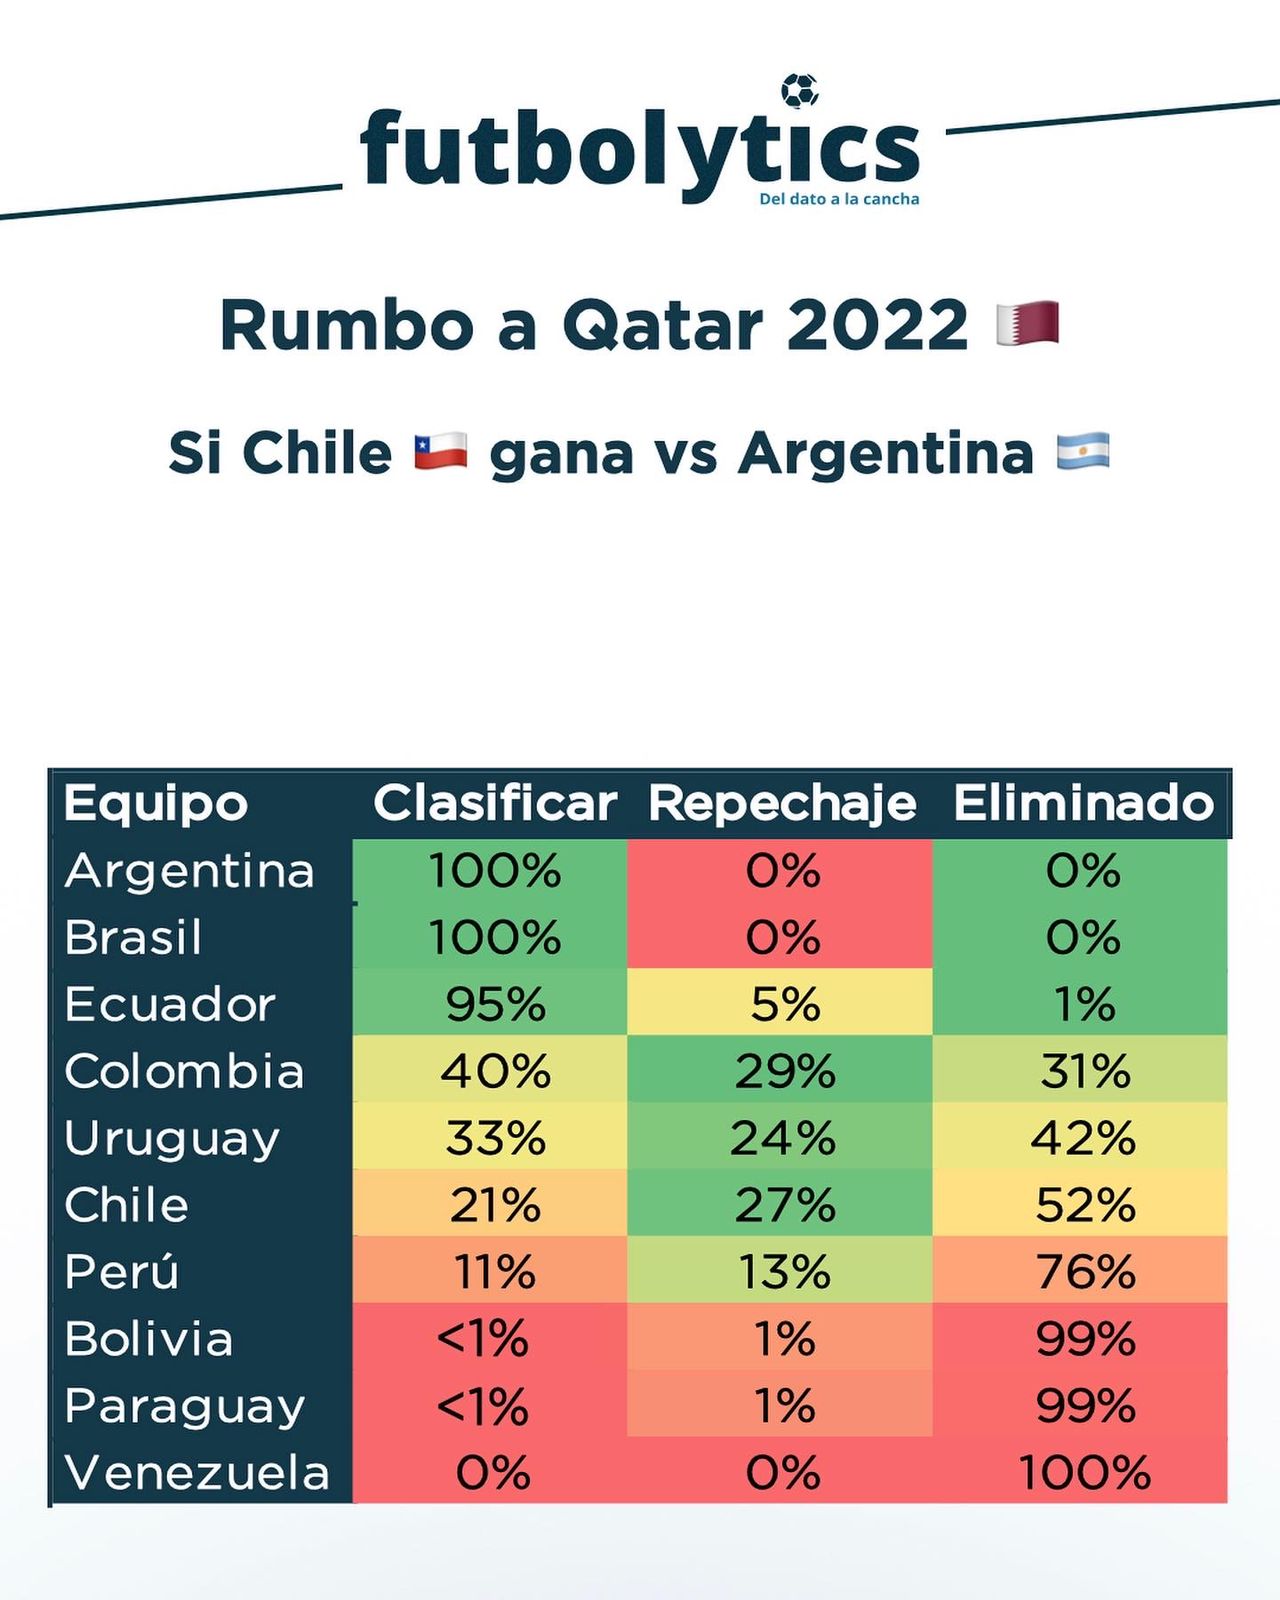 ¿Qué posibilidad tiene Chile de ir al Mundial